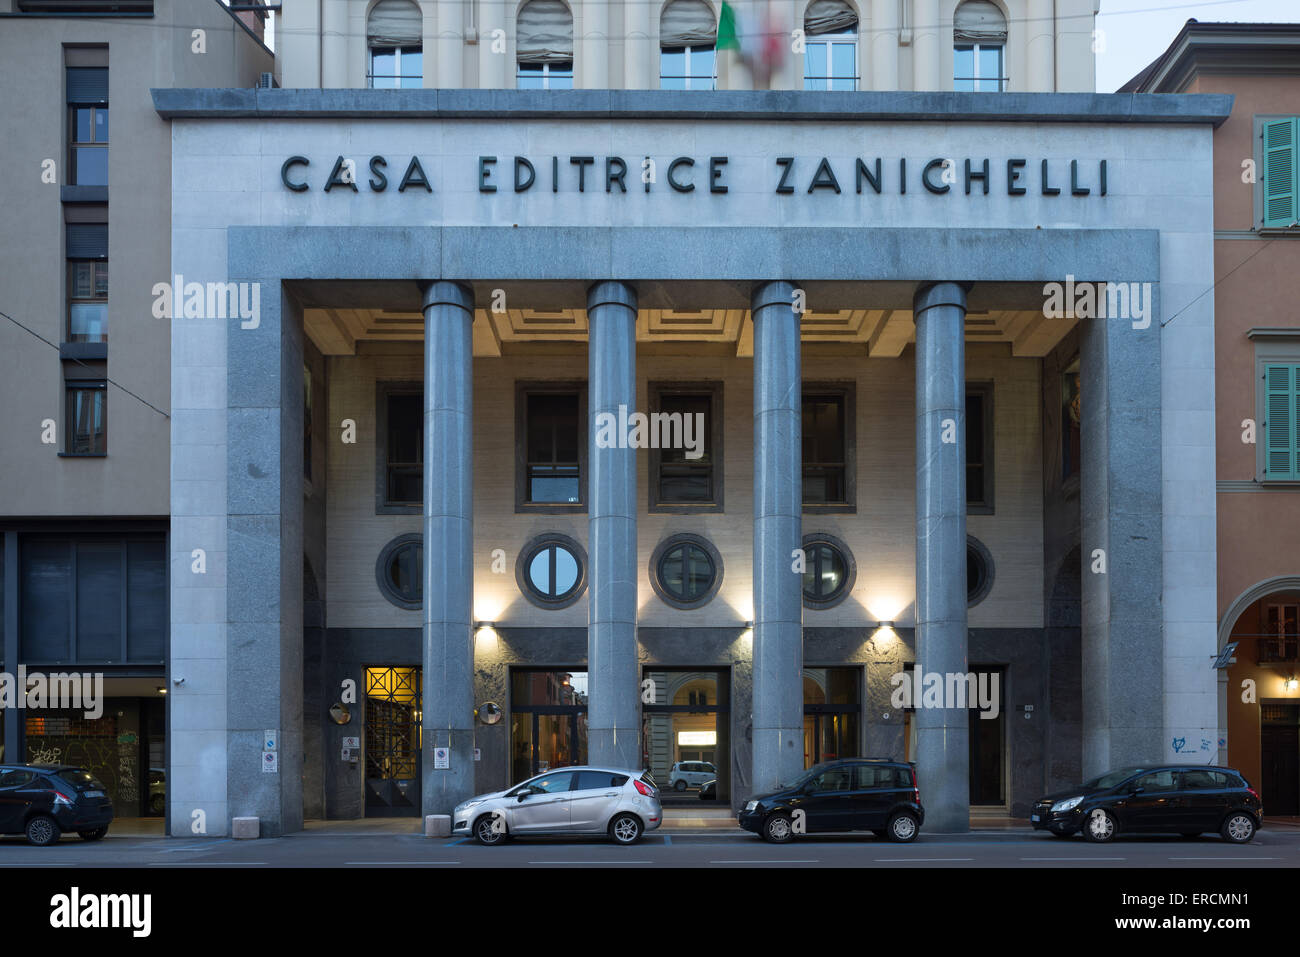 Casa Editrice Zanichelli. Fascist architecture in Bologna Italy. Stock Photo